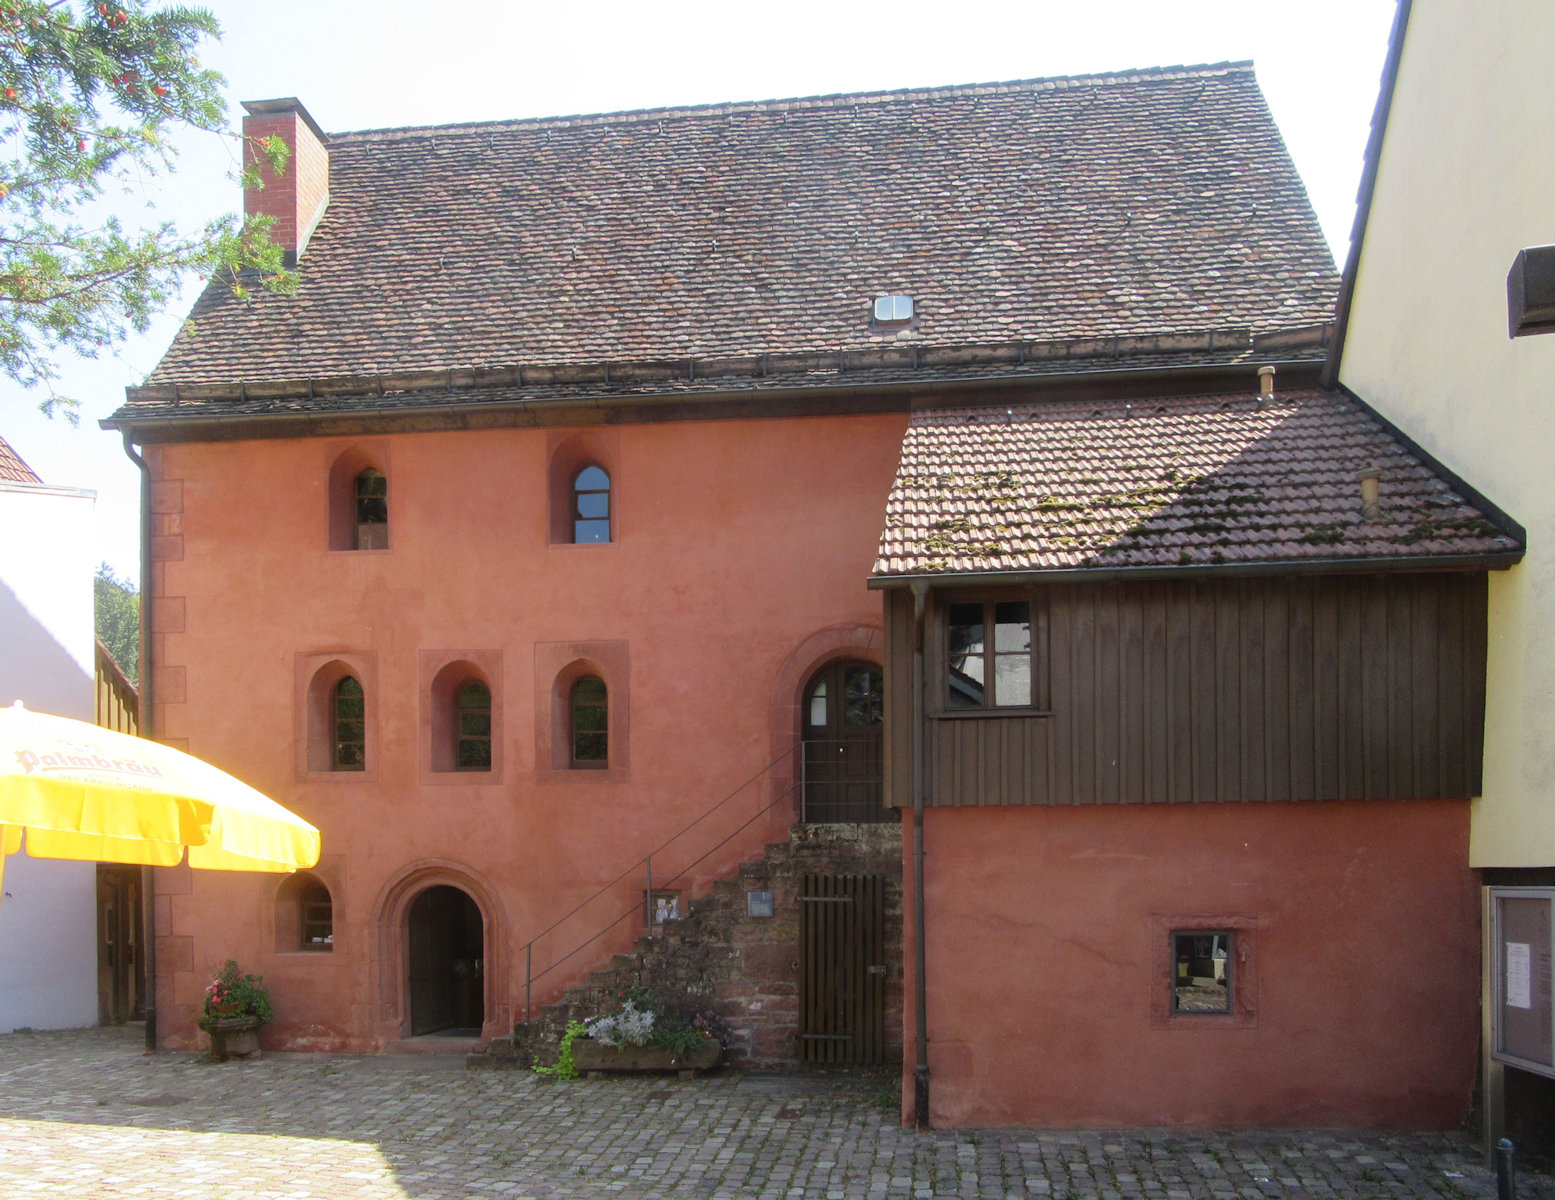 Hühnerfautei - Sitz des Vogtes des Klosters, der die Steuern, v. a. oft Hühner, einzog - des Klosters Schönau, gebaut 1250/1251, ältestes erhaltenes Profangebäude in Süddeutschland